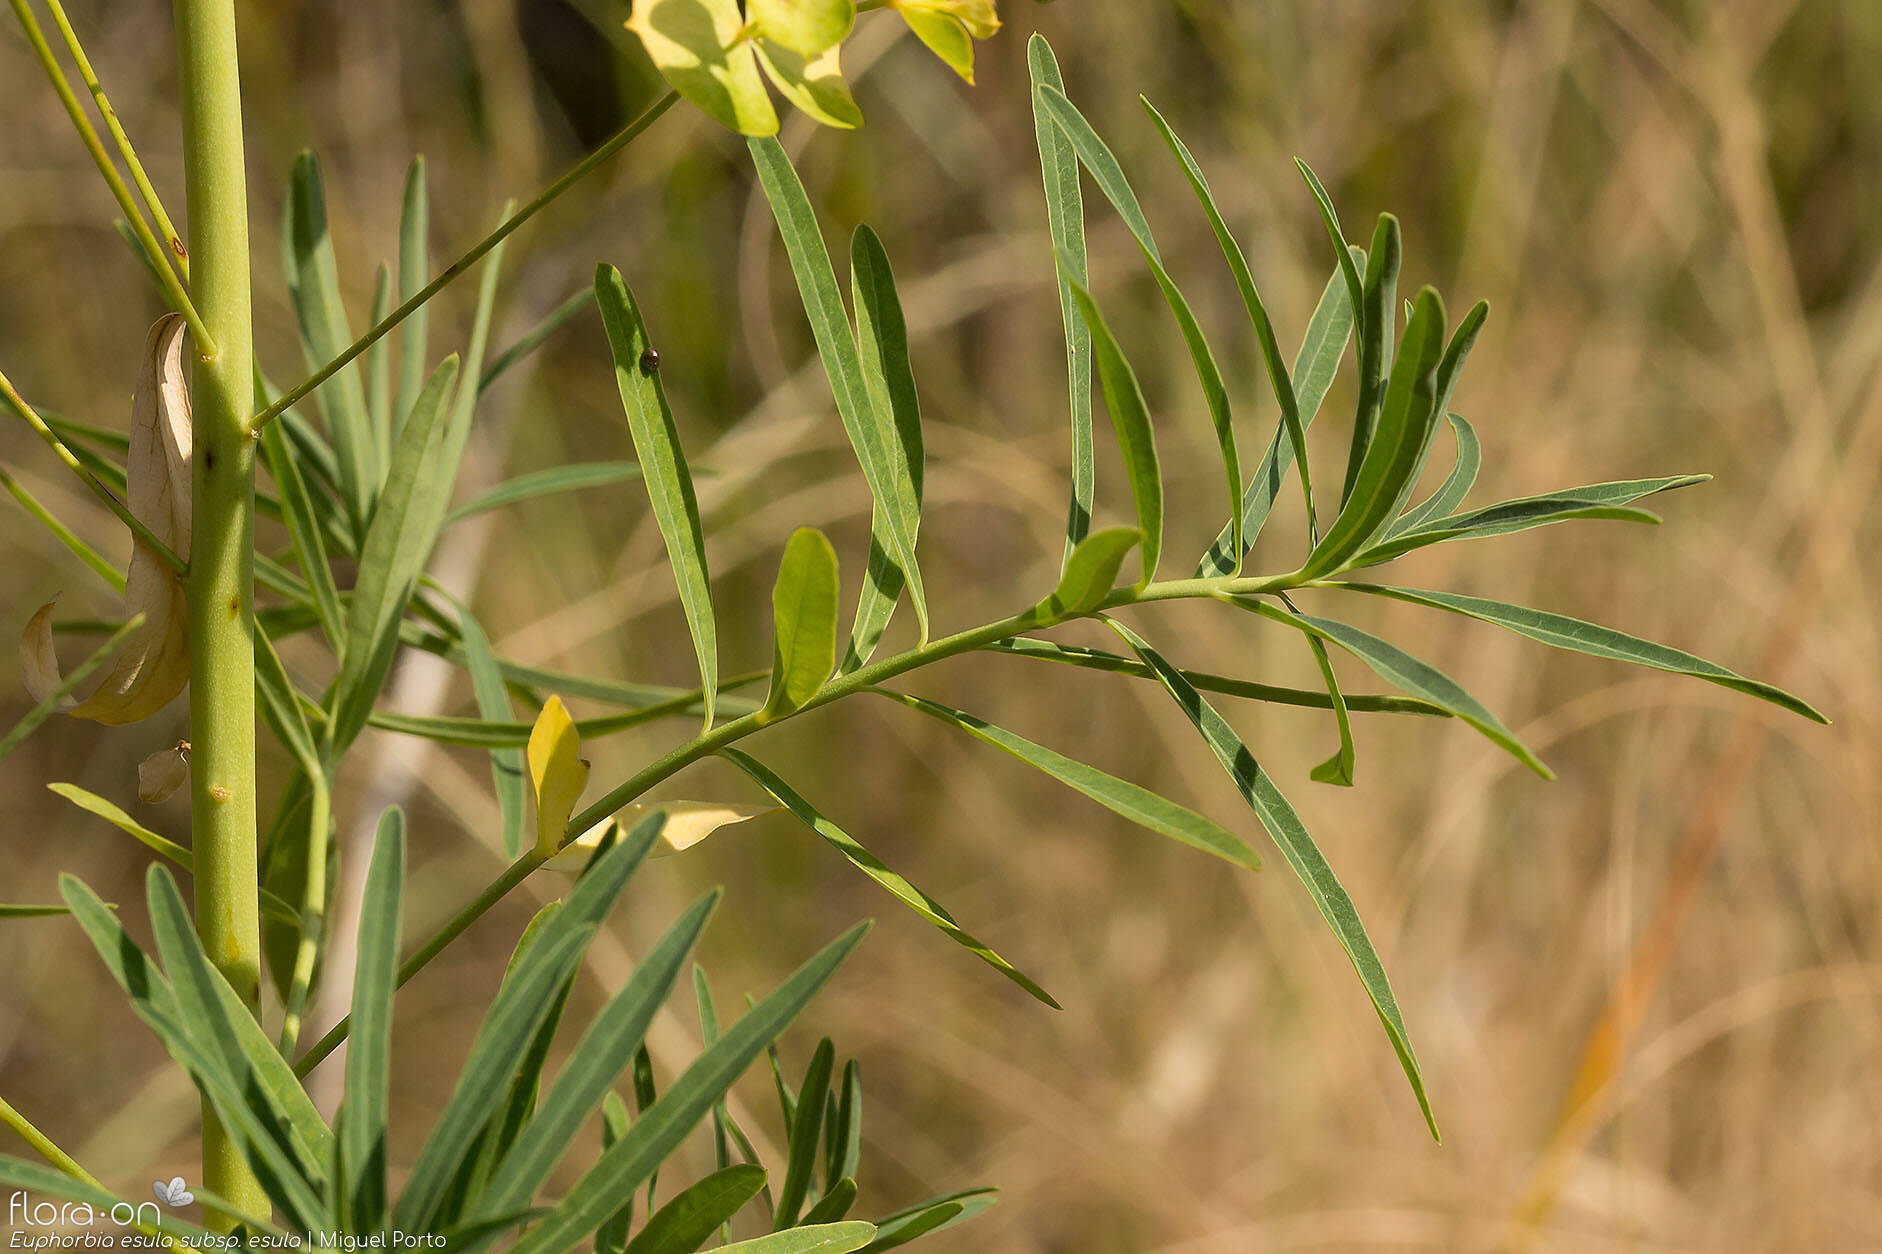 Euphorbia esula esula - Folha (geral) | Miguel Porto; CC BY-NC 4.0